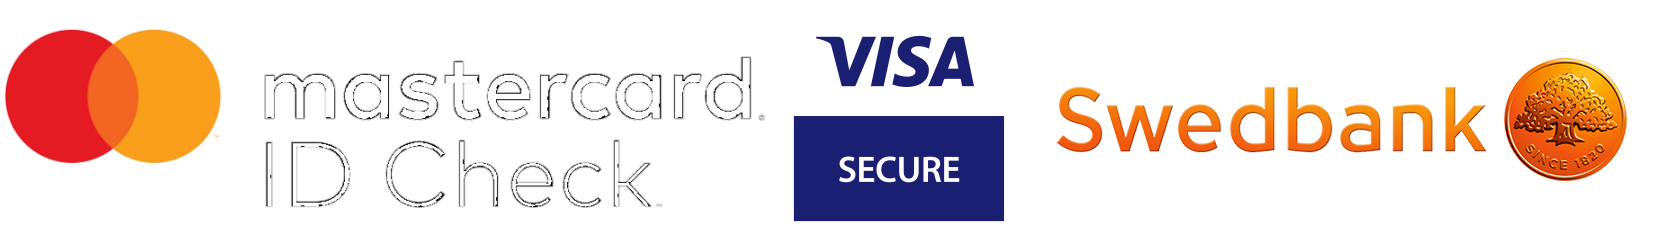 MasterCard id check, visa secure, swedbank